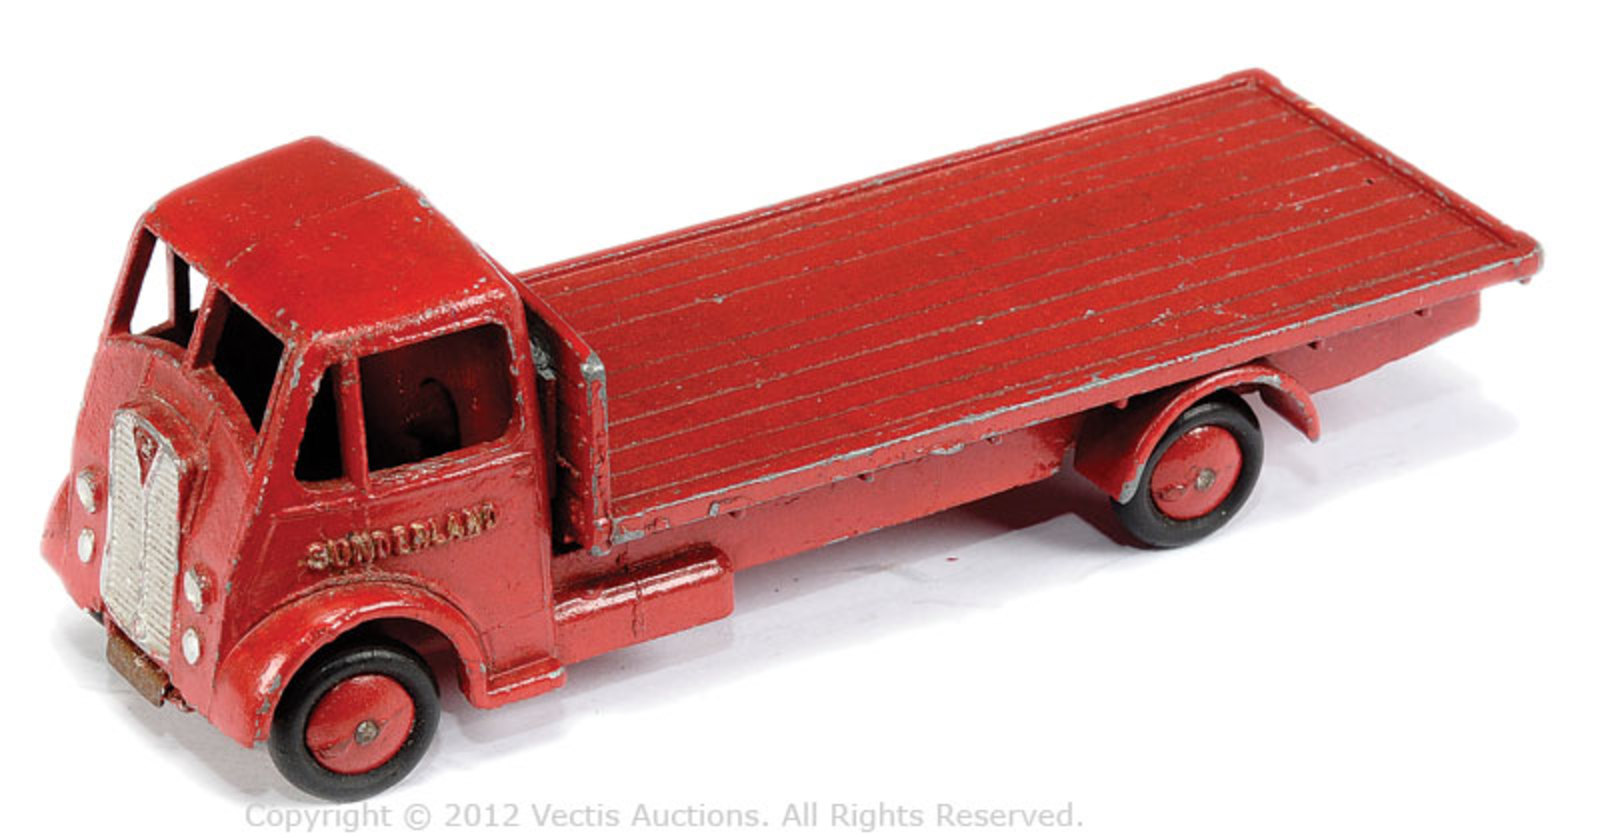 British & European Diecast | Vectis Toy Auctions